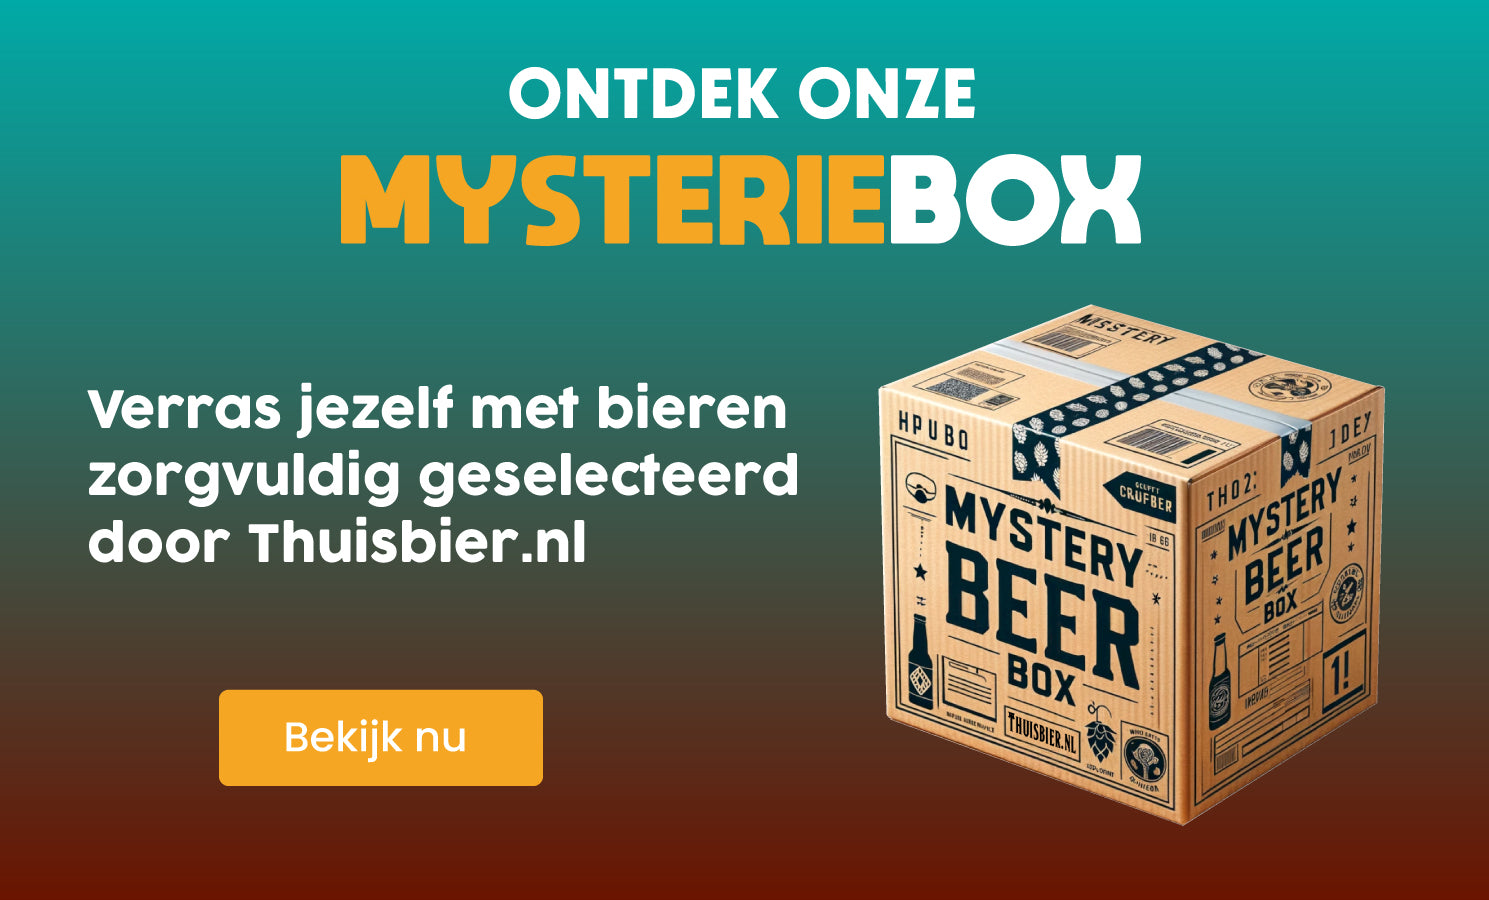 Thuisbier.nl Mysteriebox bierpakket